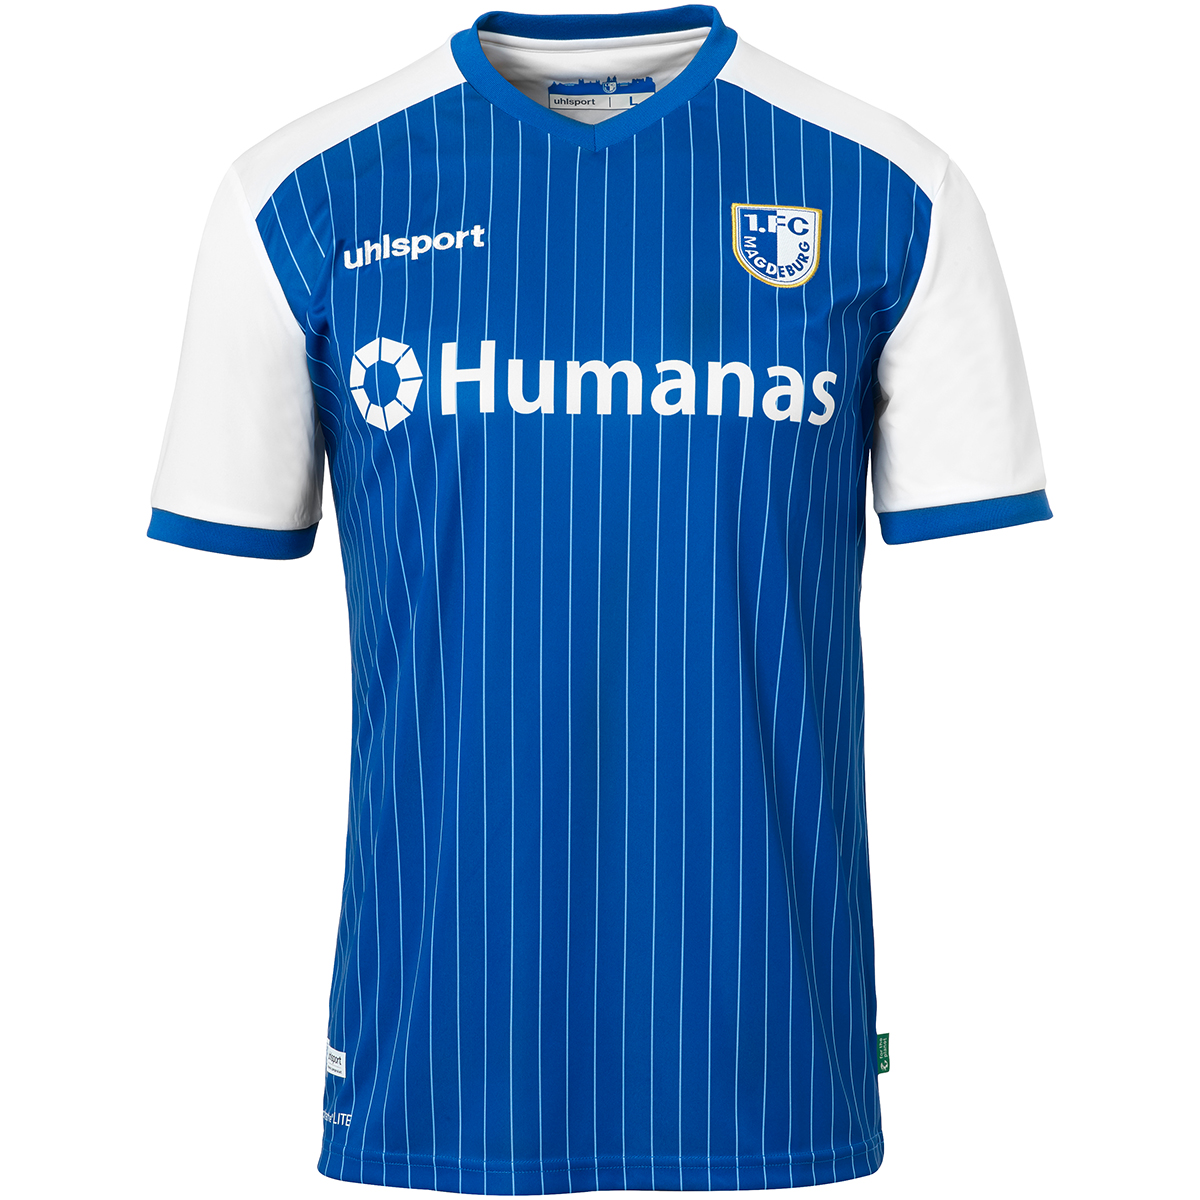 Uhlsport FCM T-Shirt Stadt & Farben blau 1 FC Magdeburg FanShirt Jersey S-3XL 